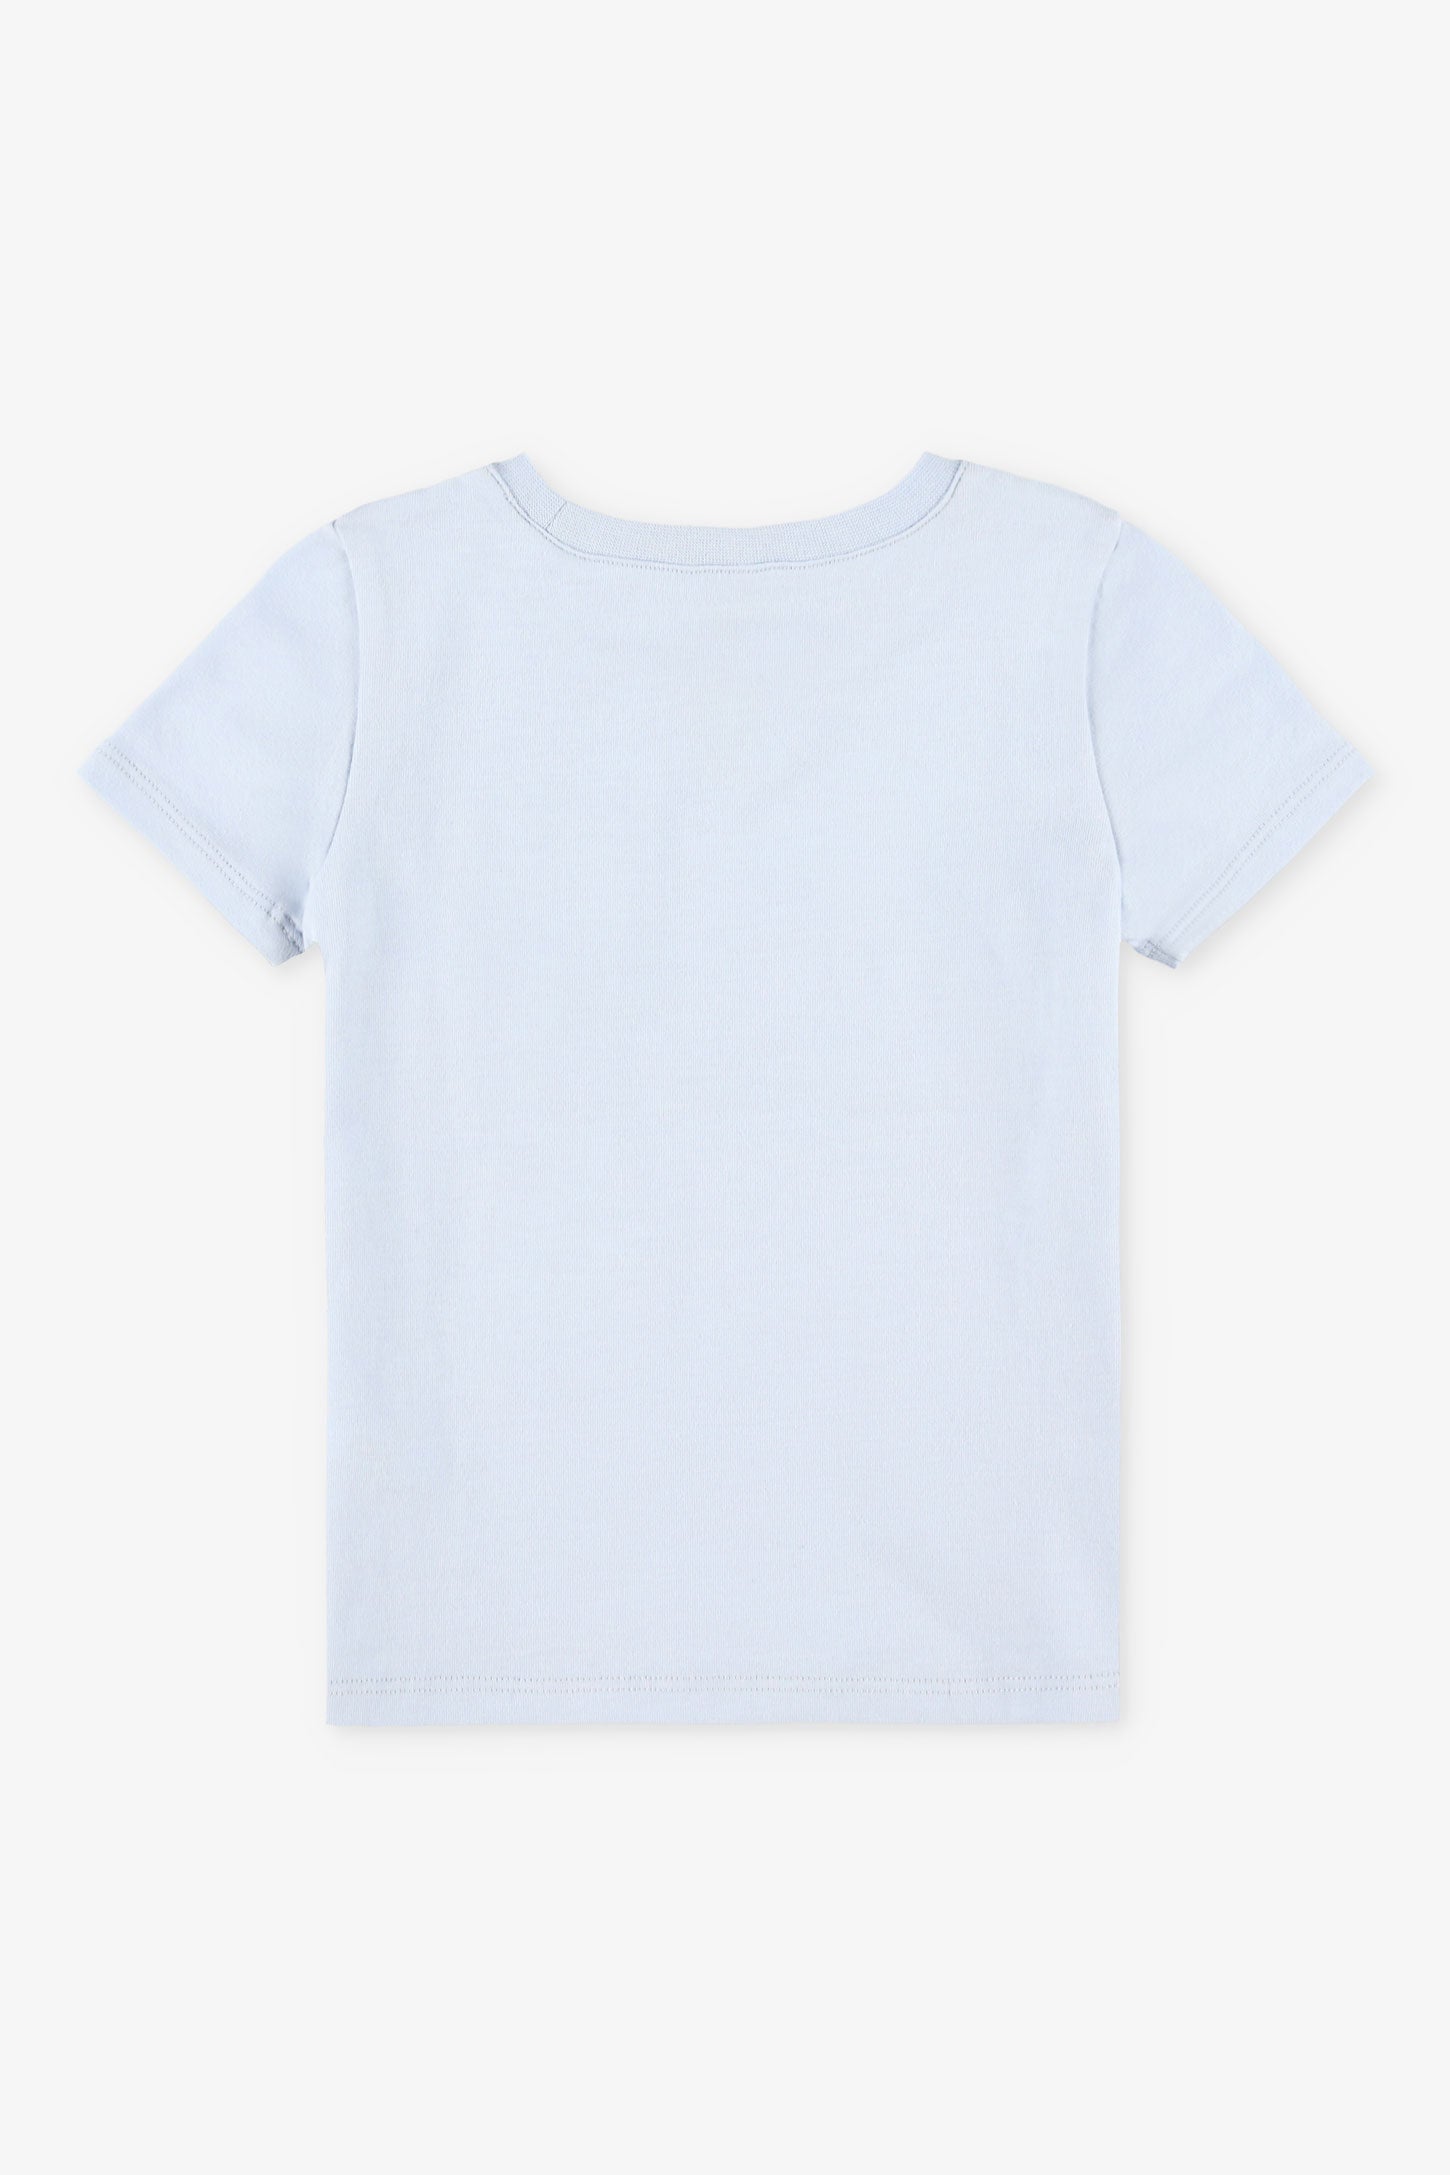 Duos futés, T-shirt à poche, 2T-3T, 2/20$ - Bébé fille && BLEU PALE